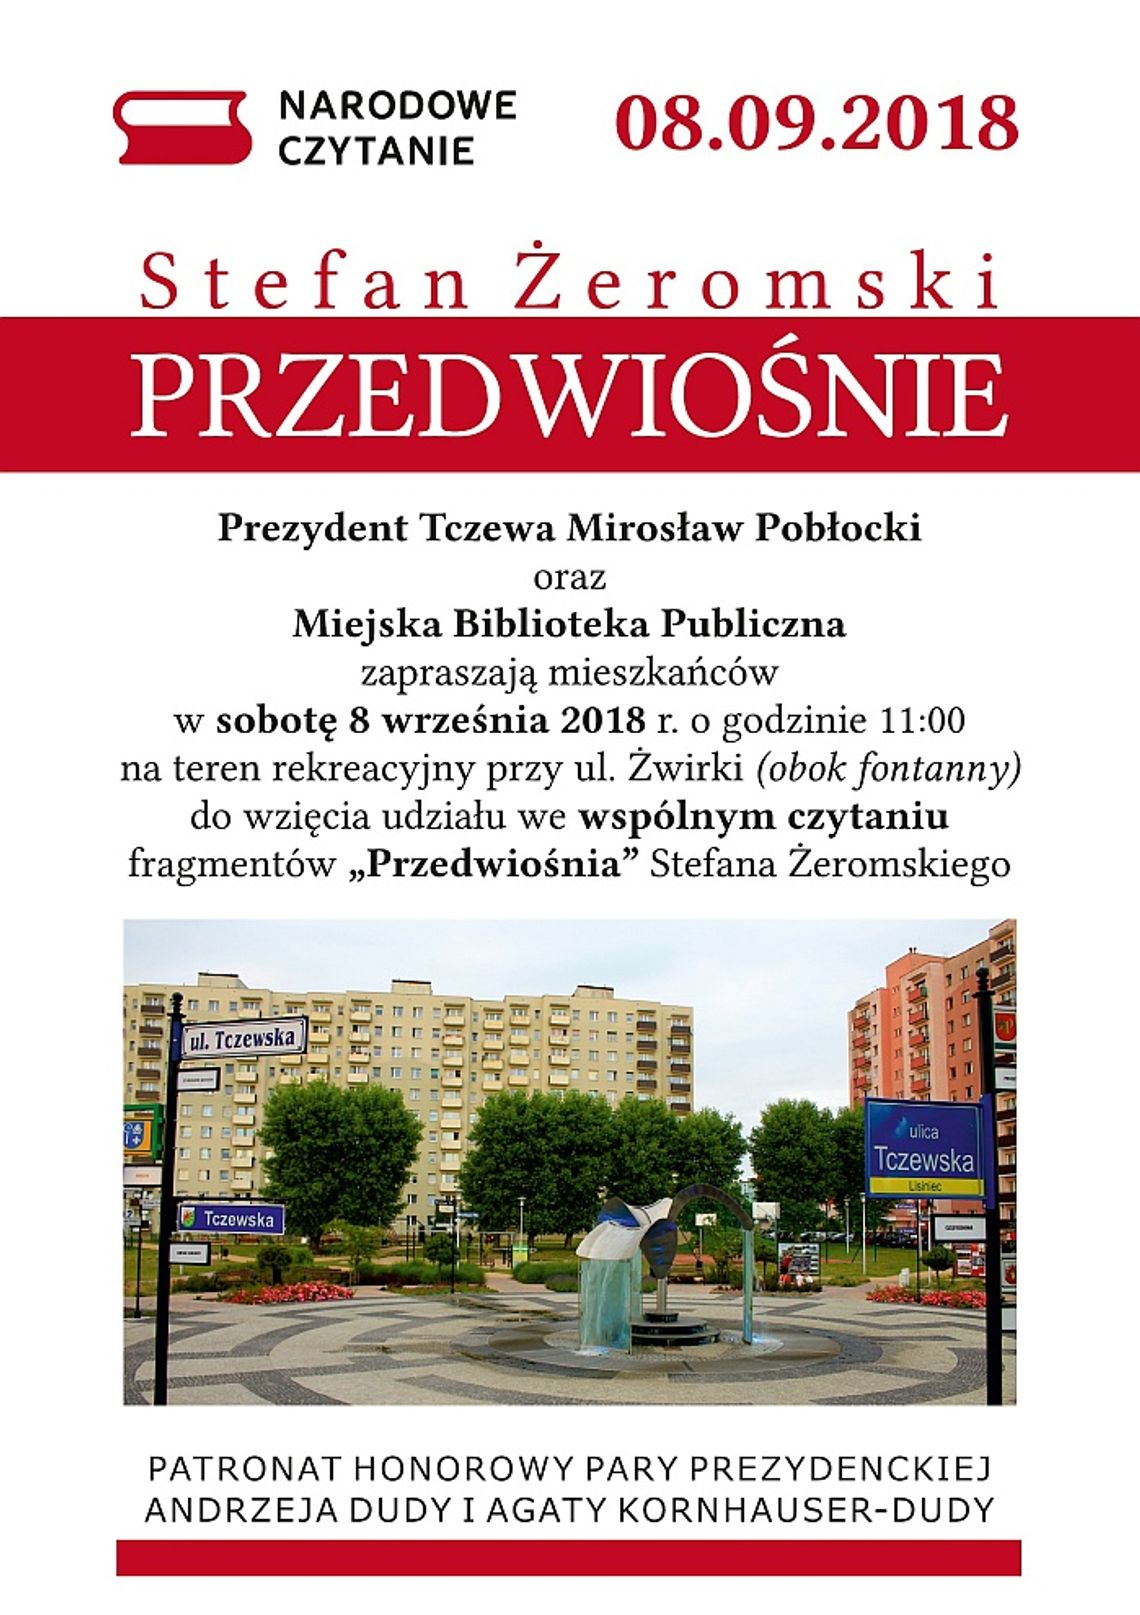 Czytanie Narodowe „Przedwiośnie” Stefana Żeromskiego.